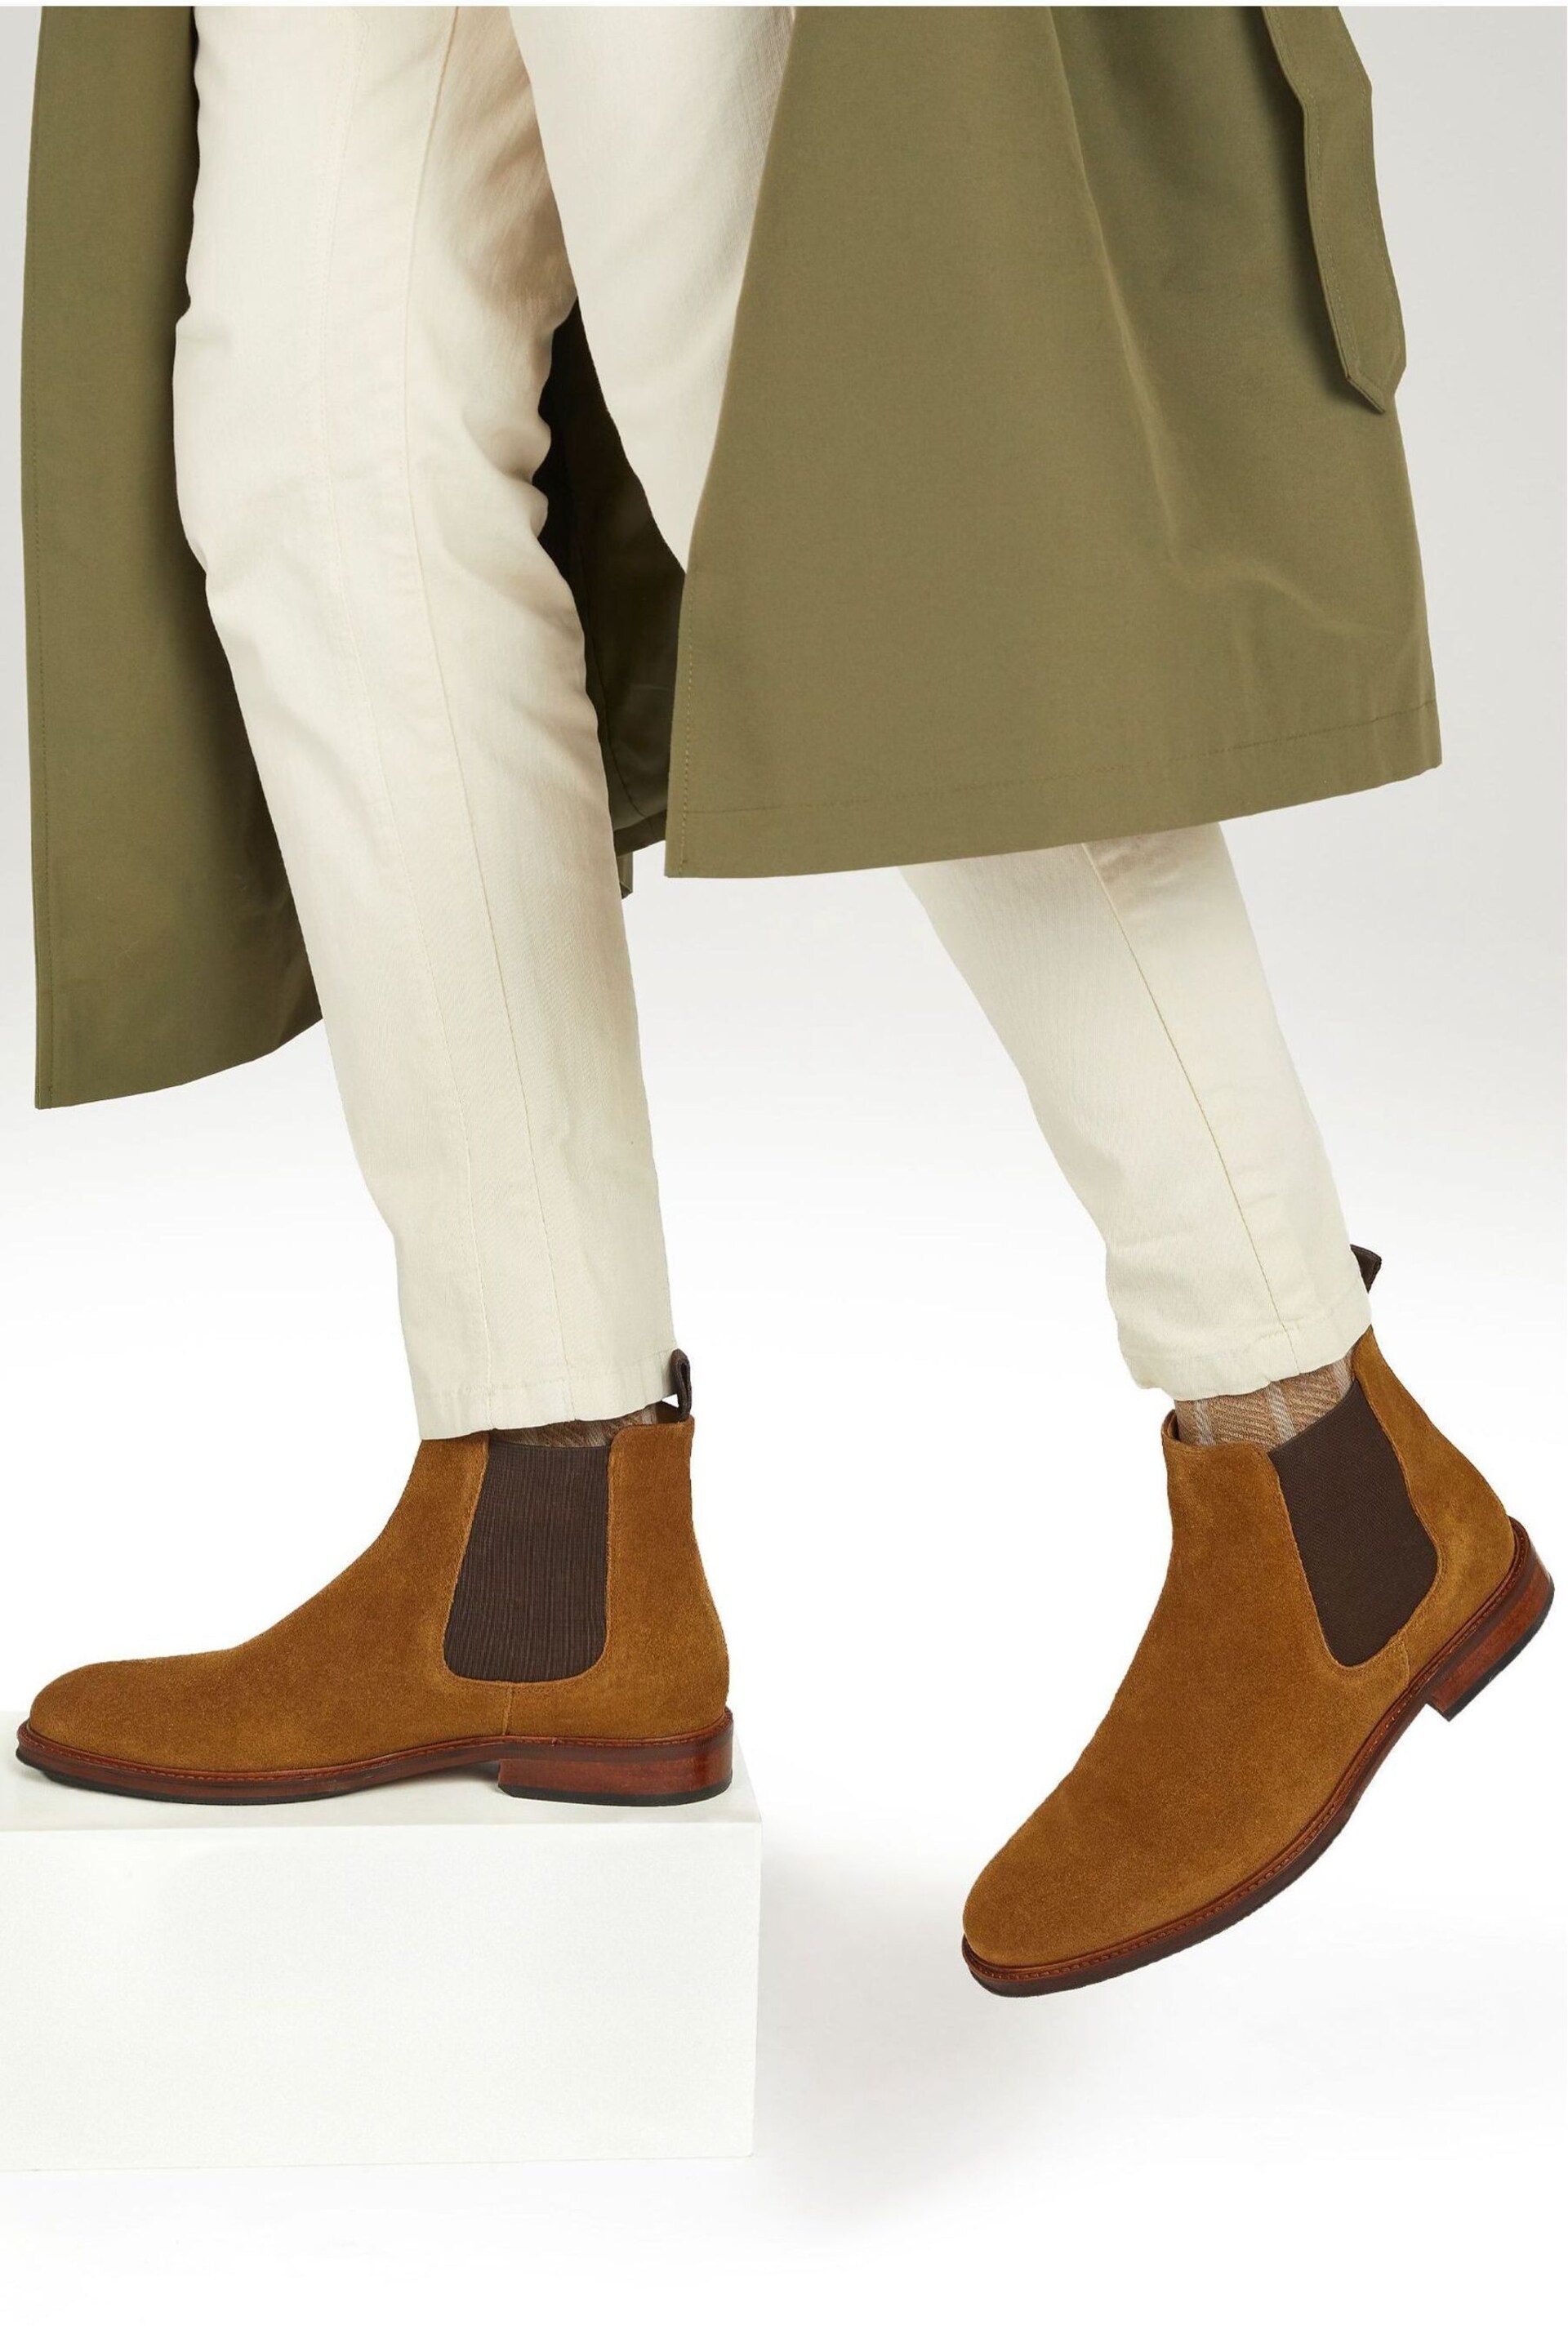 Jones Bootmaker Deakin Leather Mens Chelsea Boots - Image 1 of 6